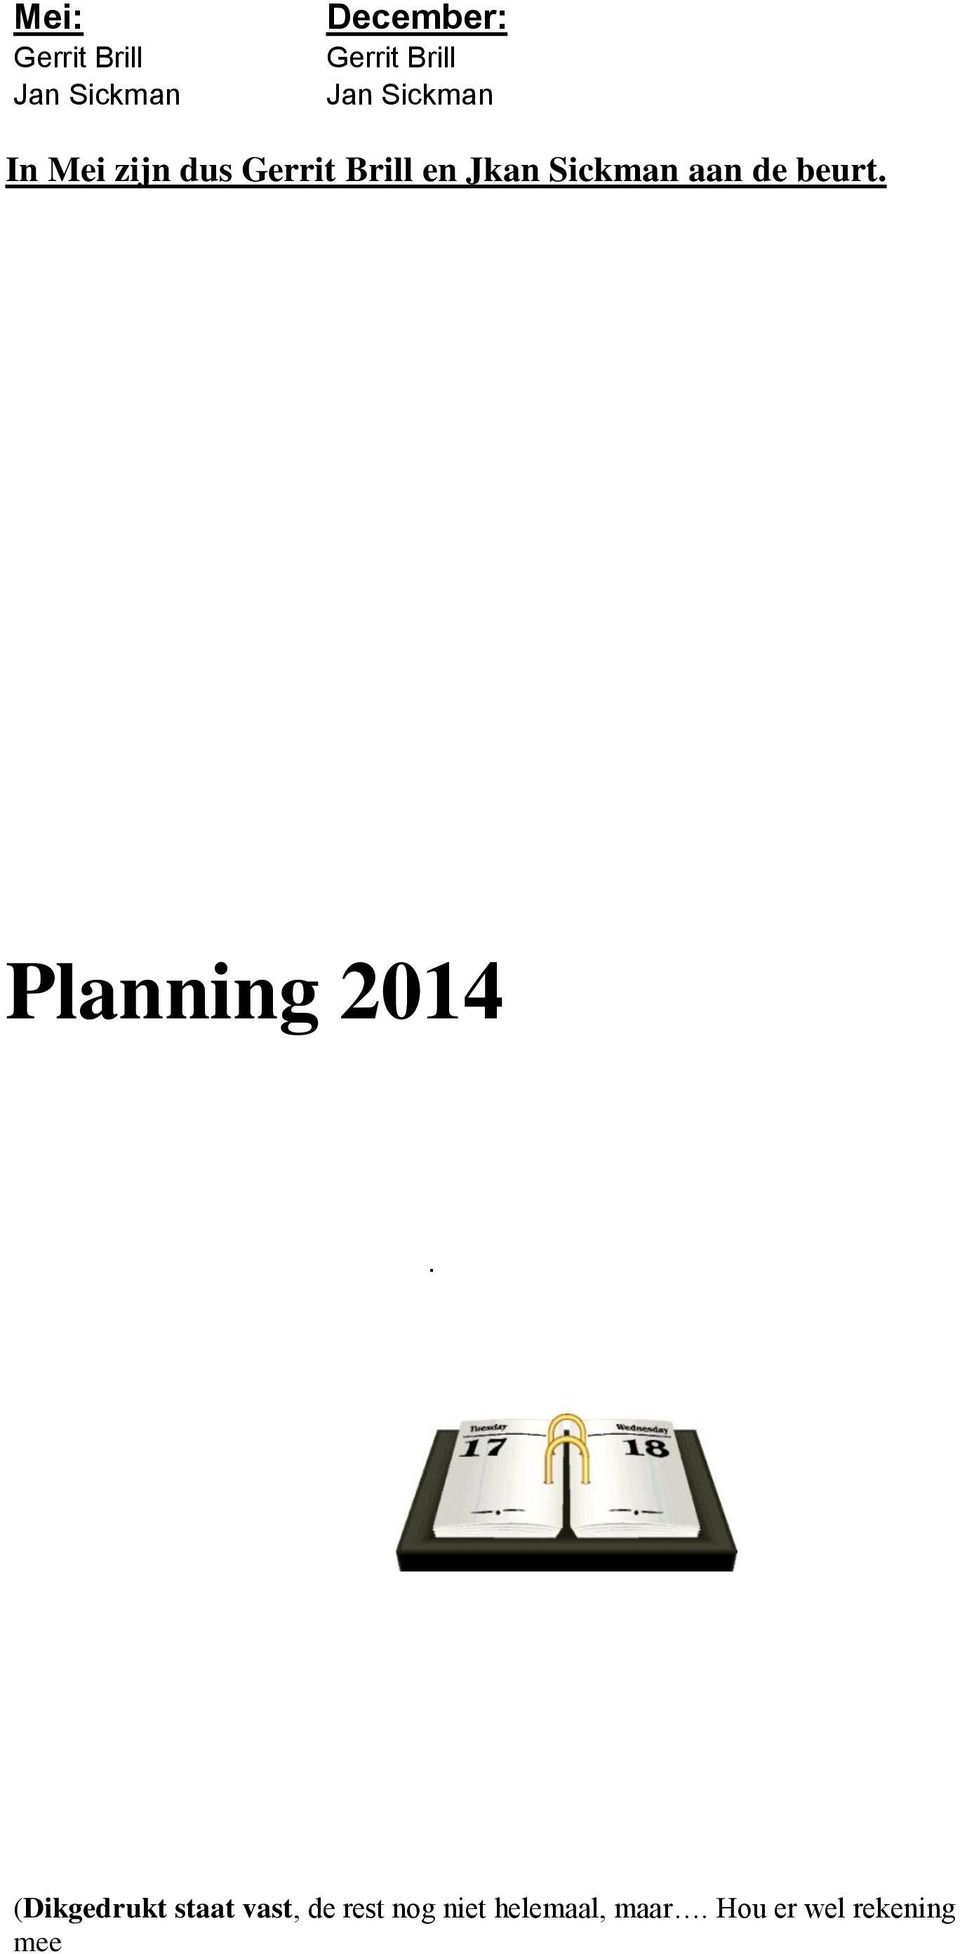 Sickman aan de beurt. Planning 2014.